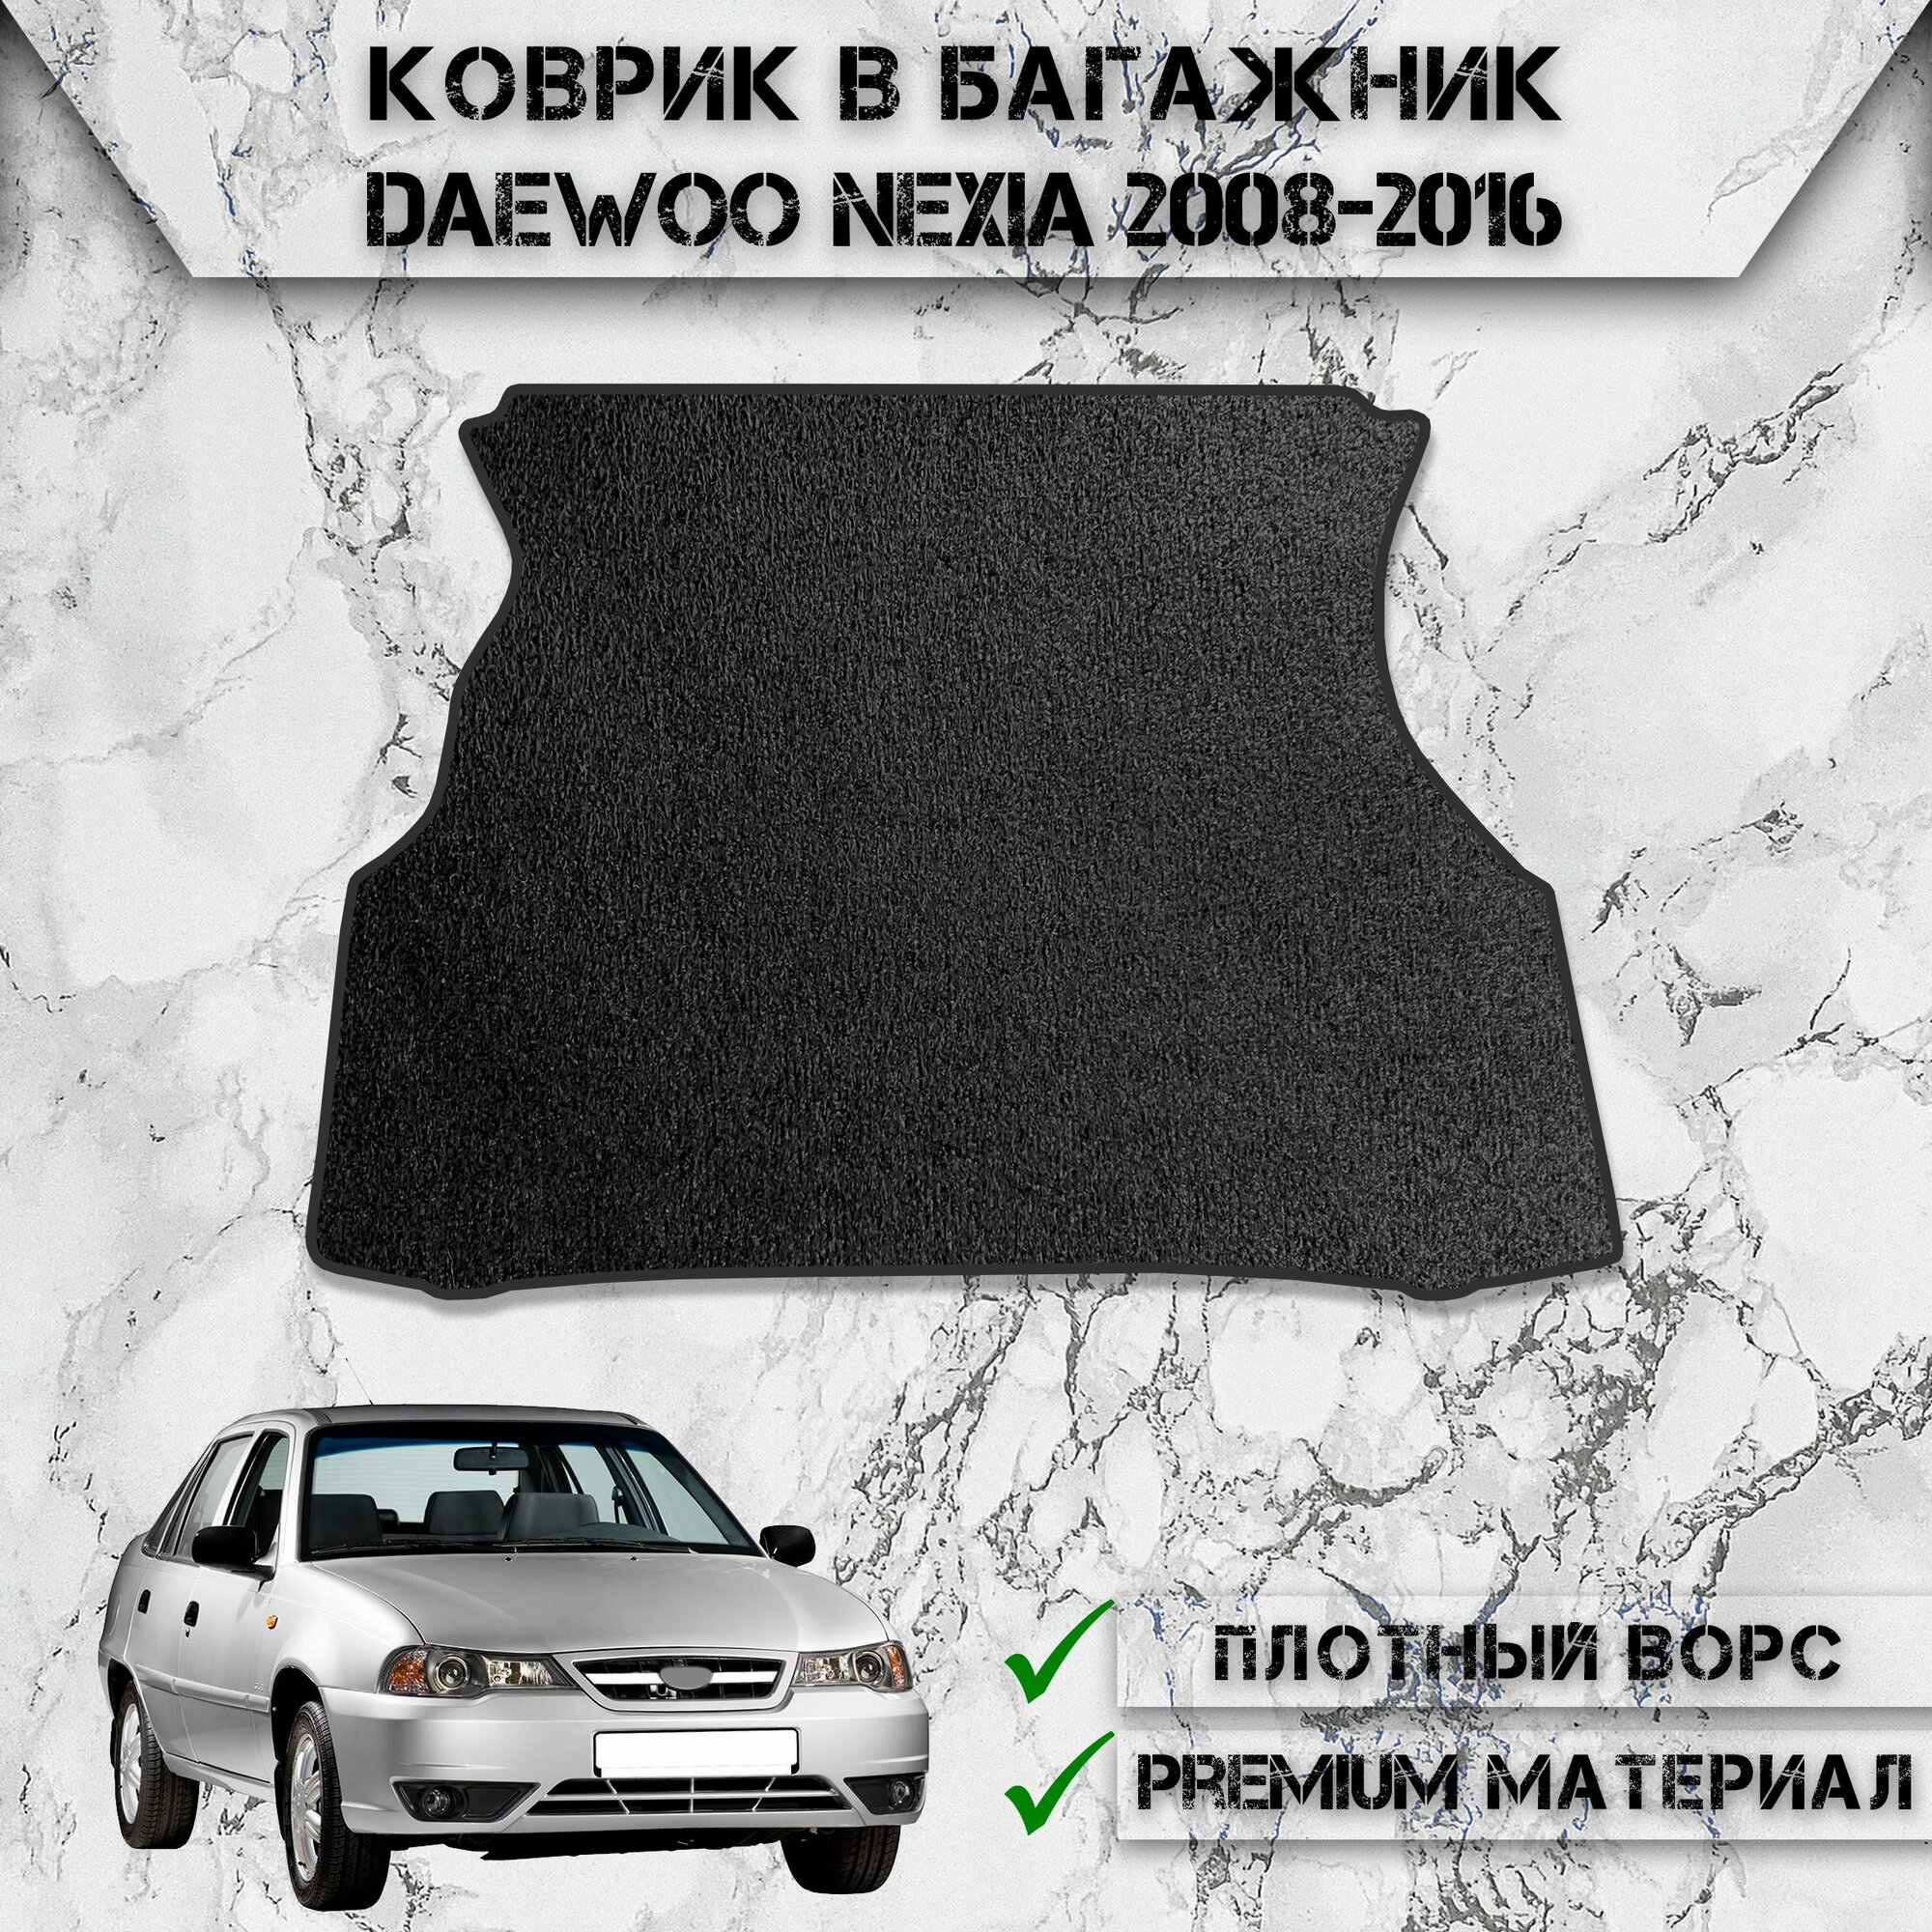 Ворсовый коврик в багажник для авто Део Нексия / Daewoo Nexia 2008-2016 Г. В. Чёрный С Чёрным Кантом